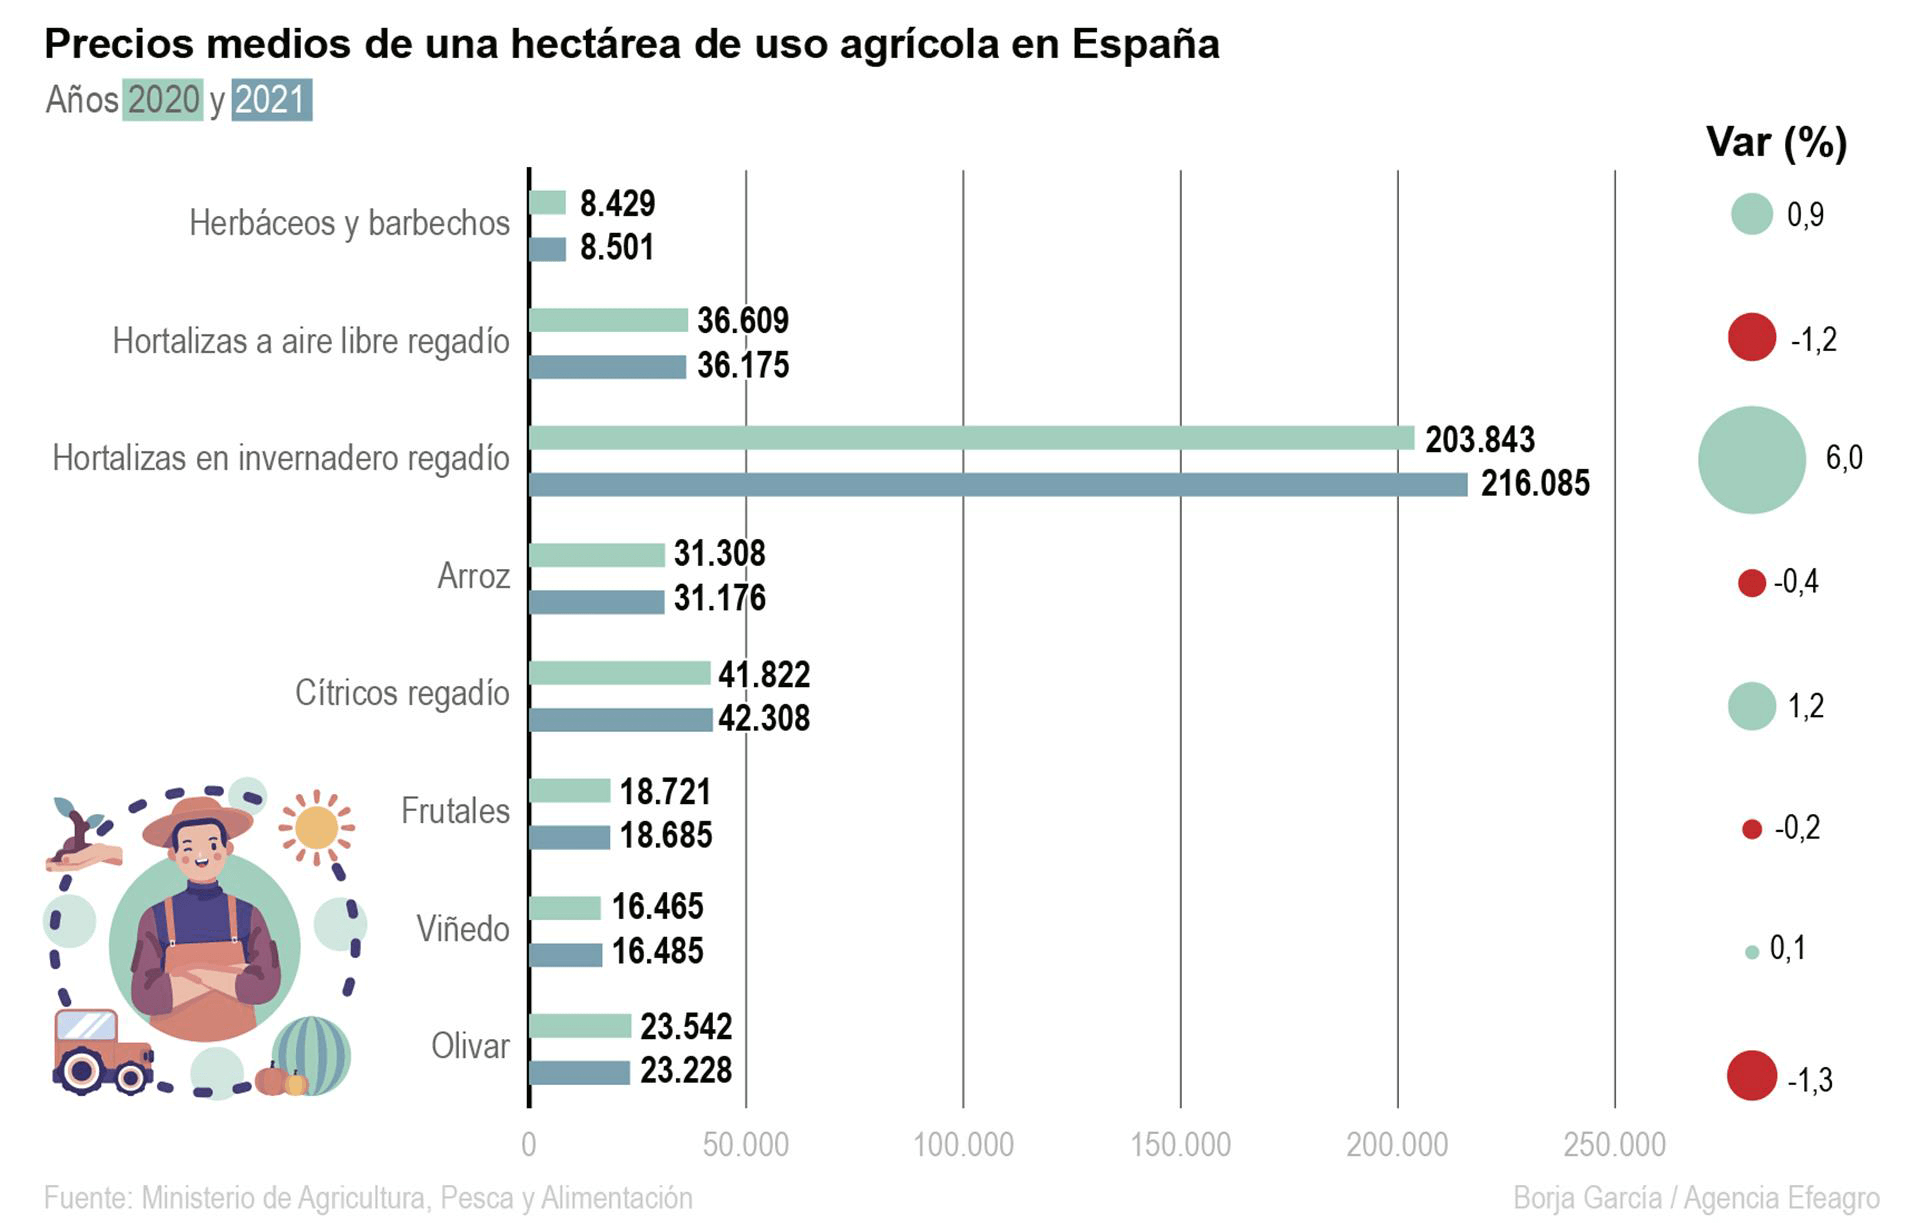 Infografía con los precios medios de una hectárea en 2021 y 2020 por cultivos. Efeagro/ Borja García.